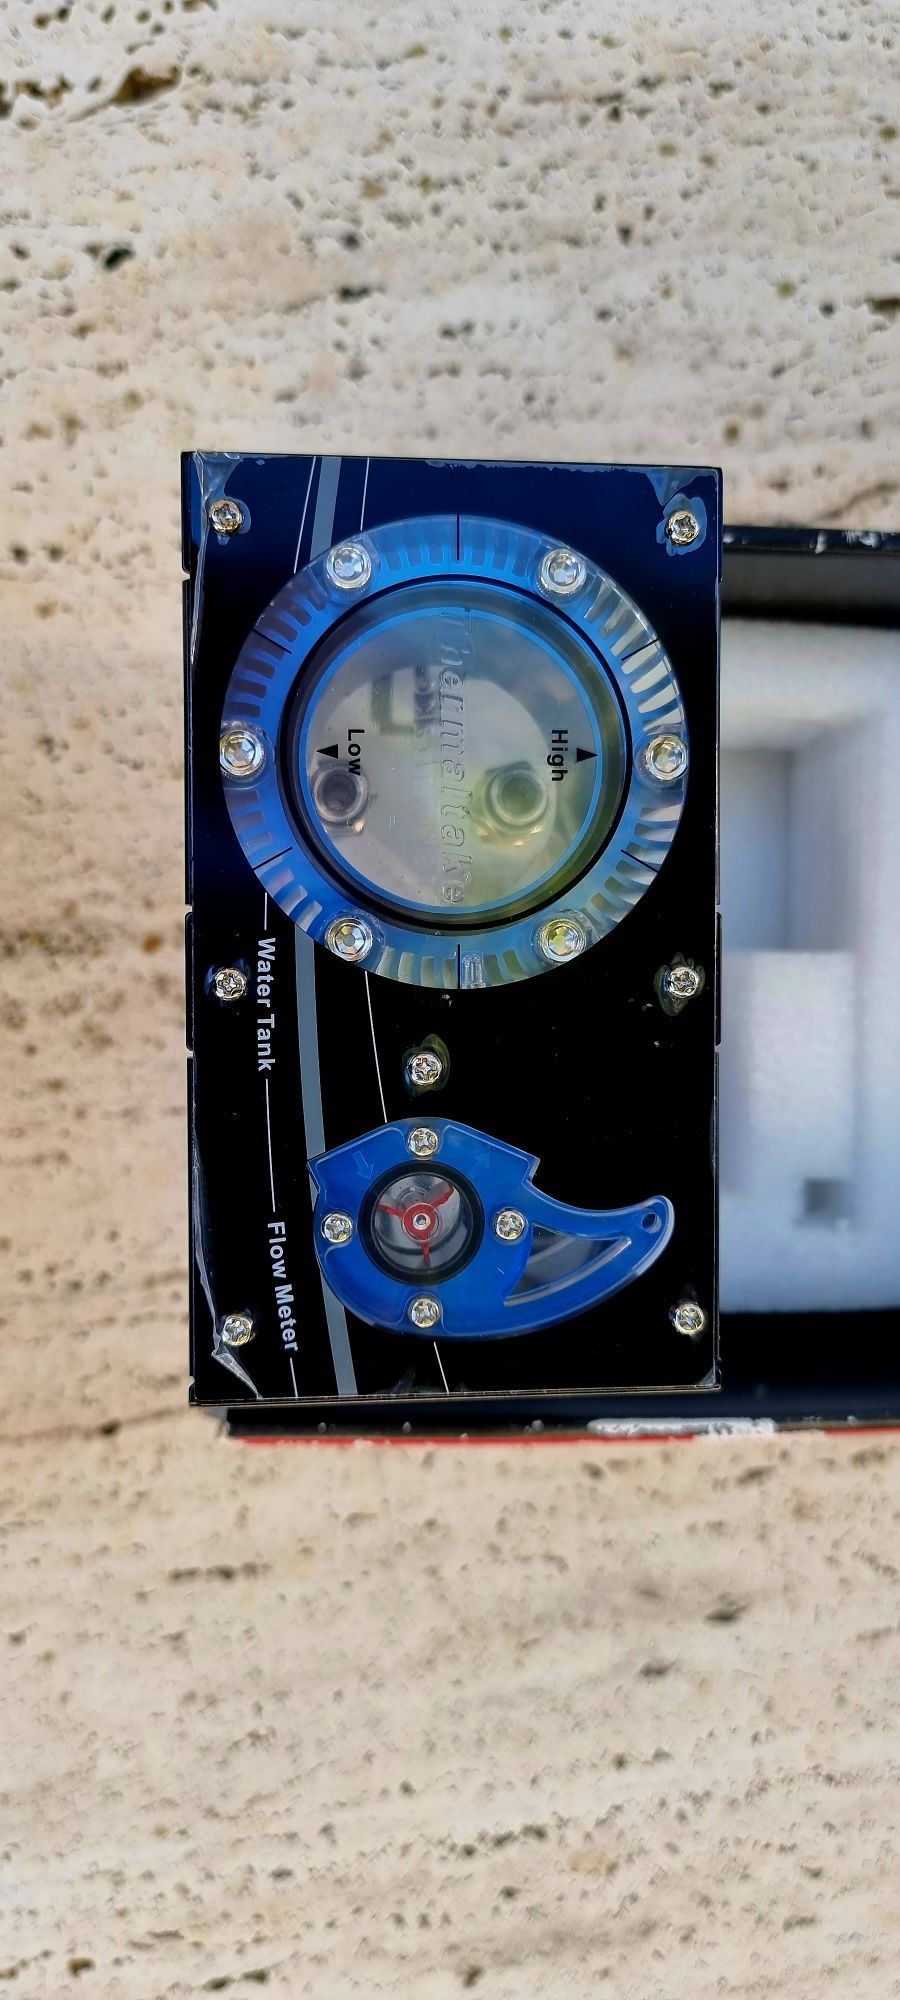 Thermaltake watercooler flow meter